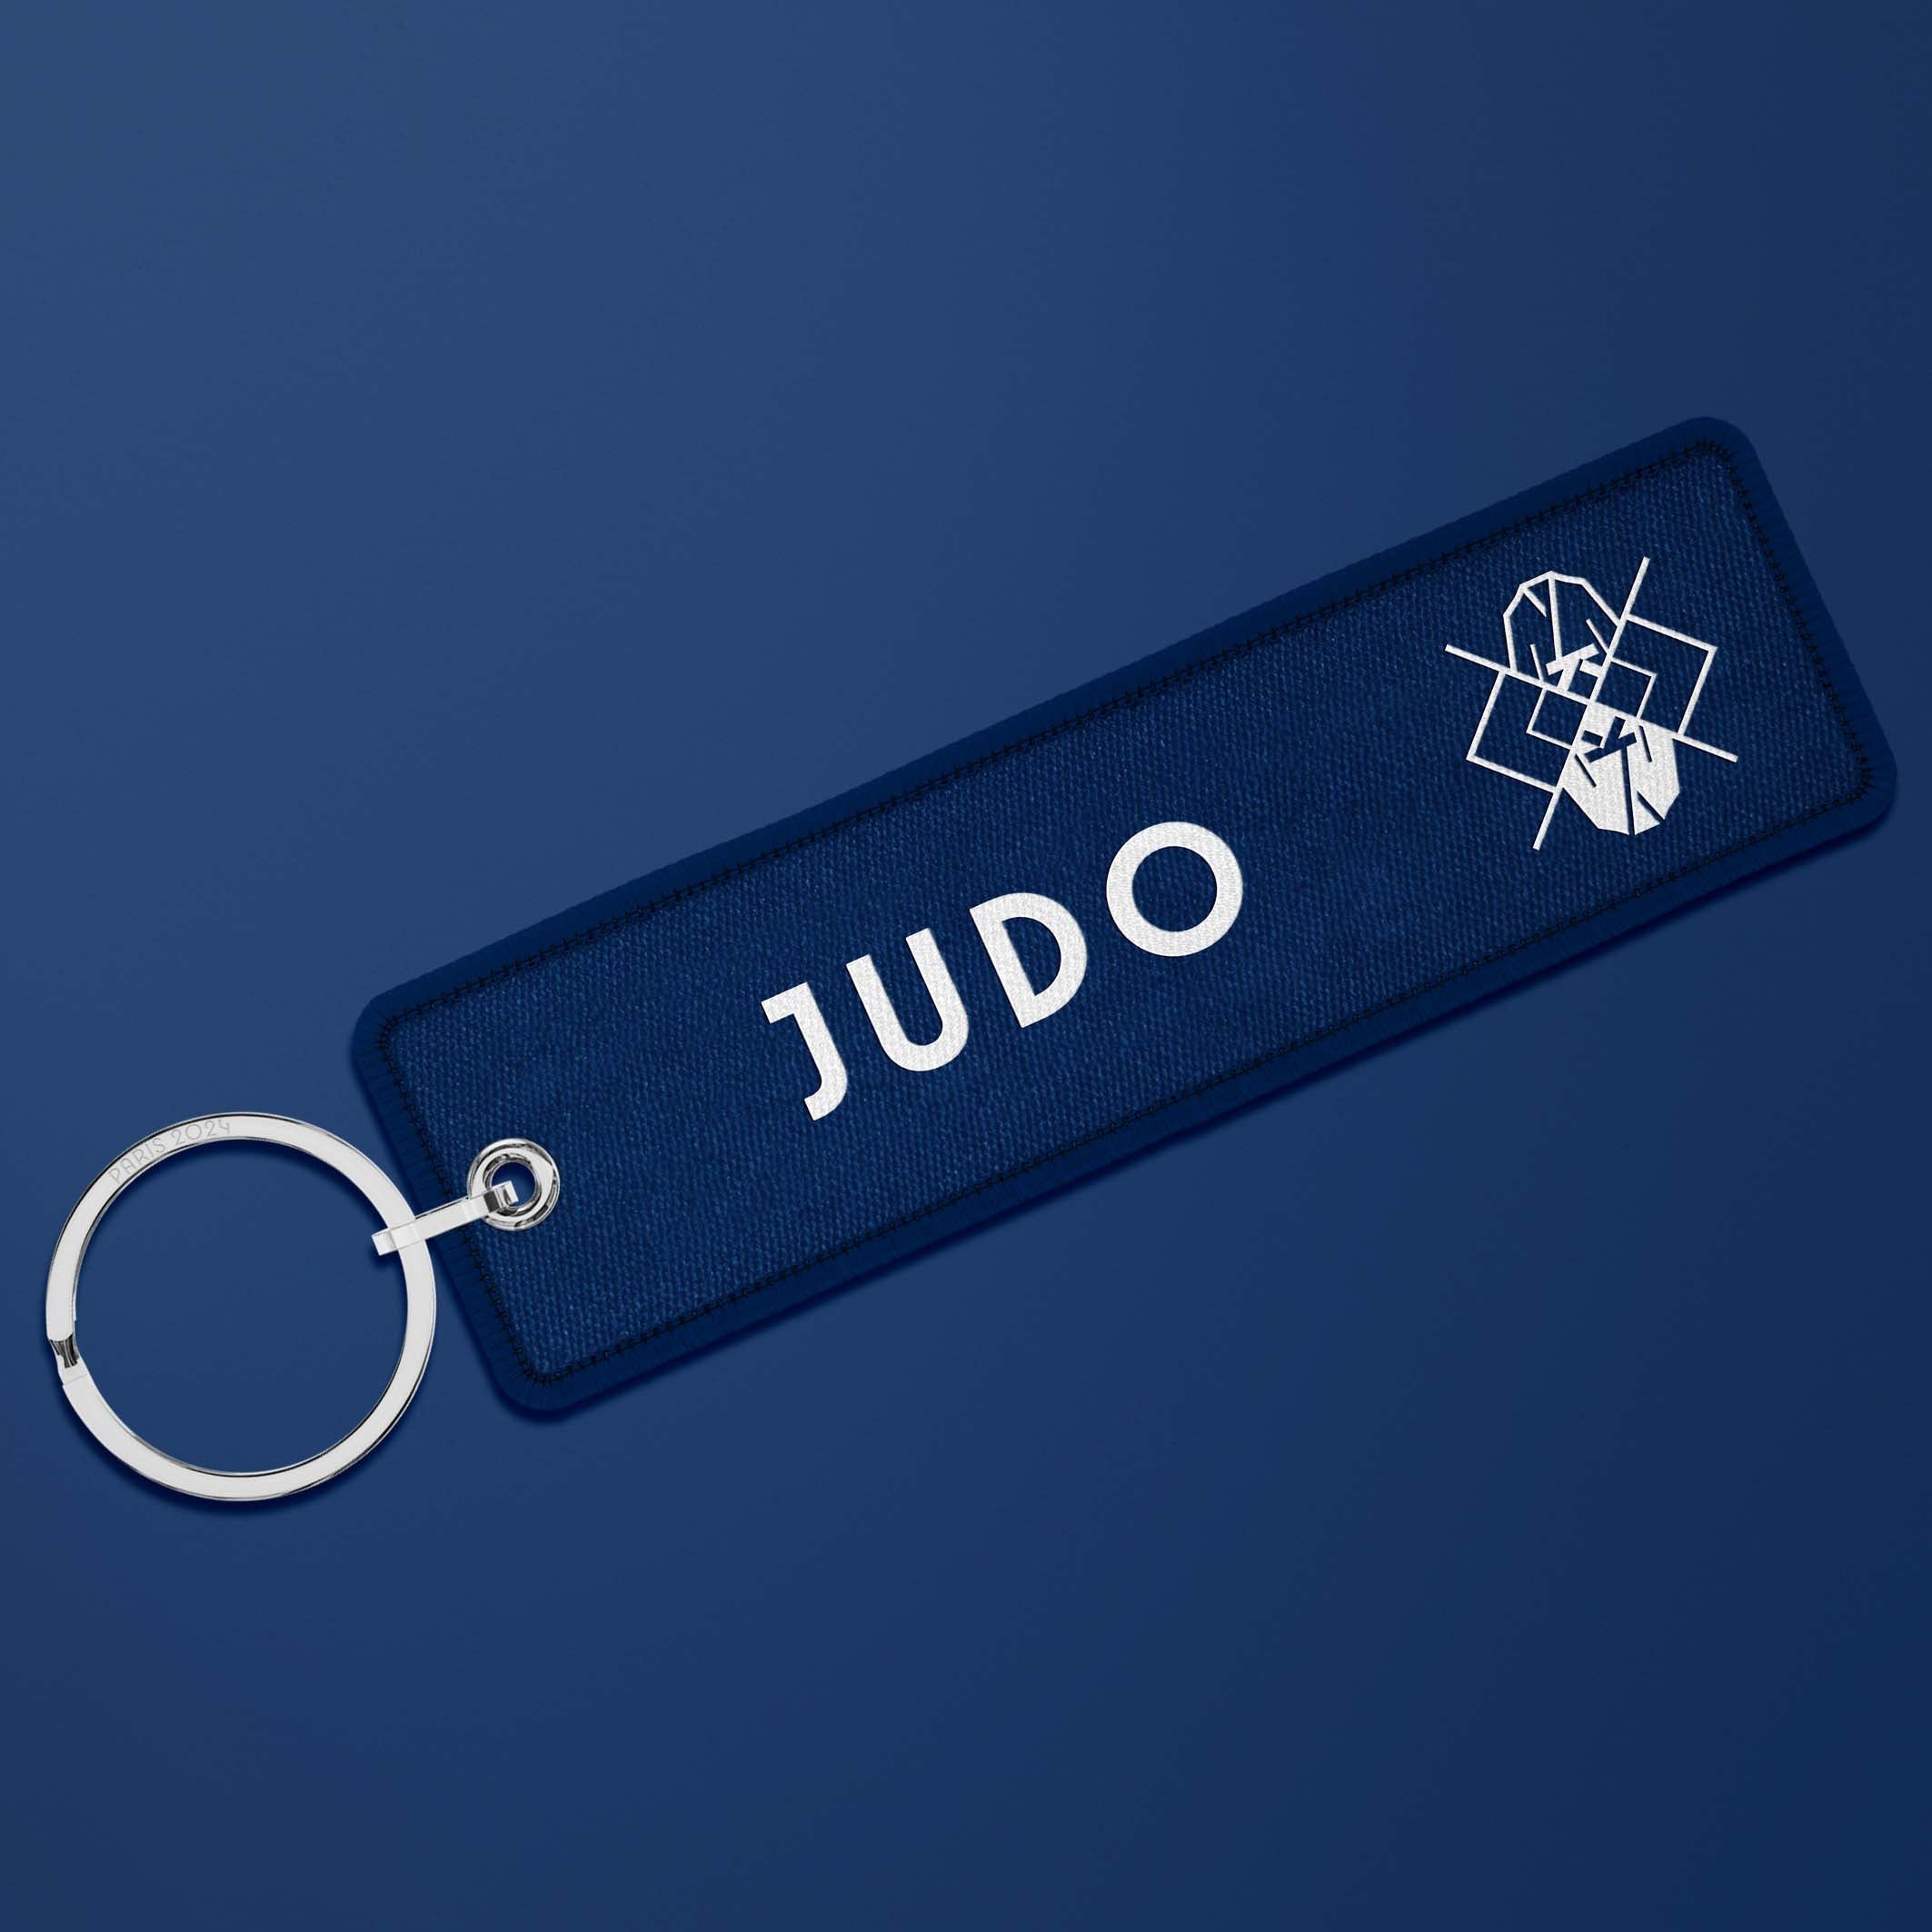 Porte-clés flamme Paris 2024 French blue - Judo